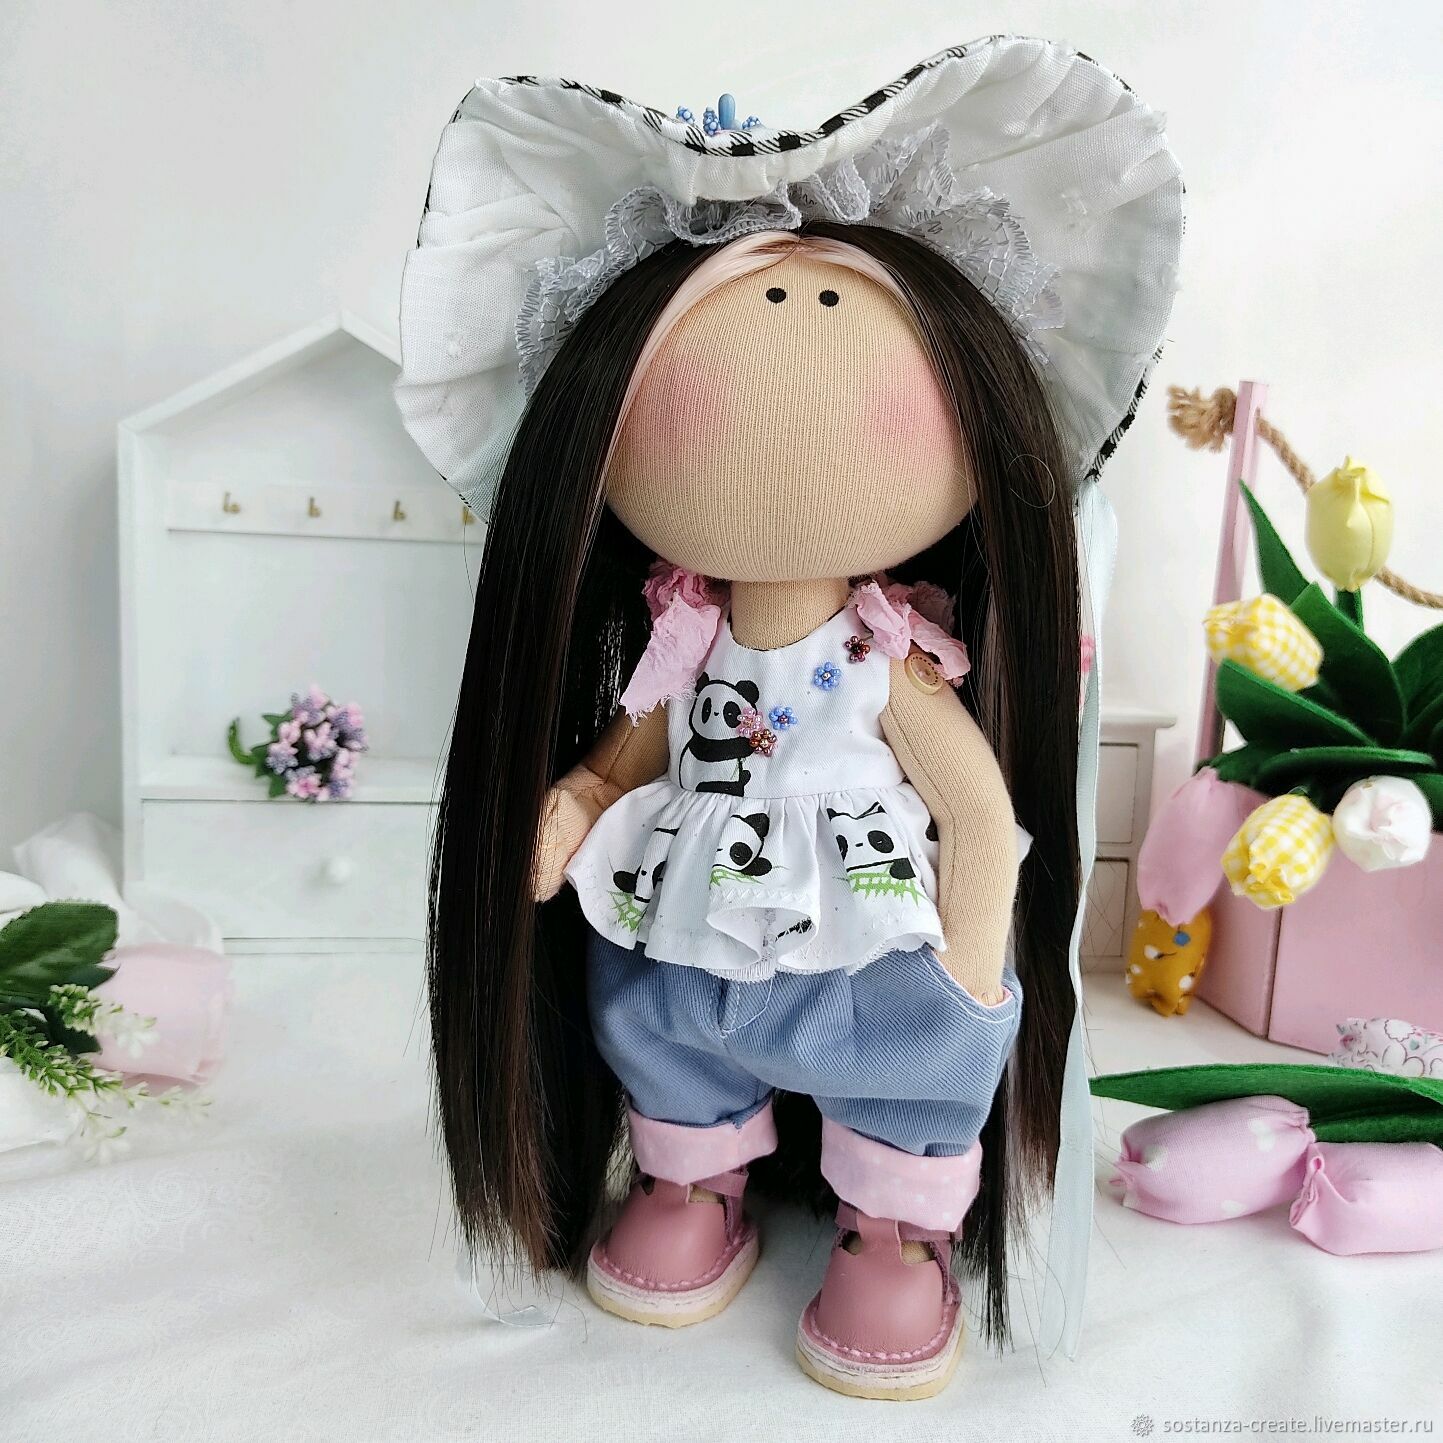 Интерьерная кукла в джинсах, Панда текстильная кукла с набором одежды, Интерьерная кукла, Шахты,  Фото №1